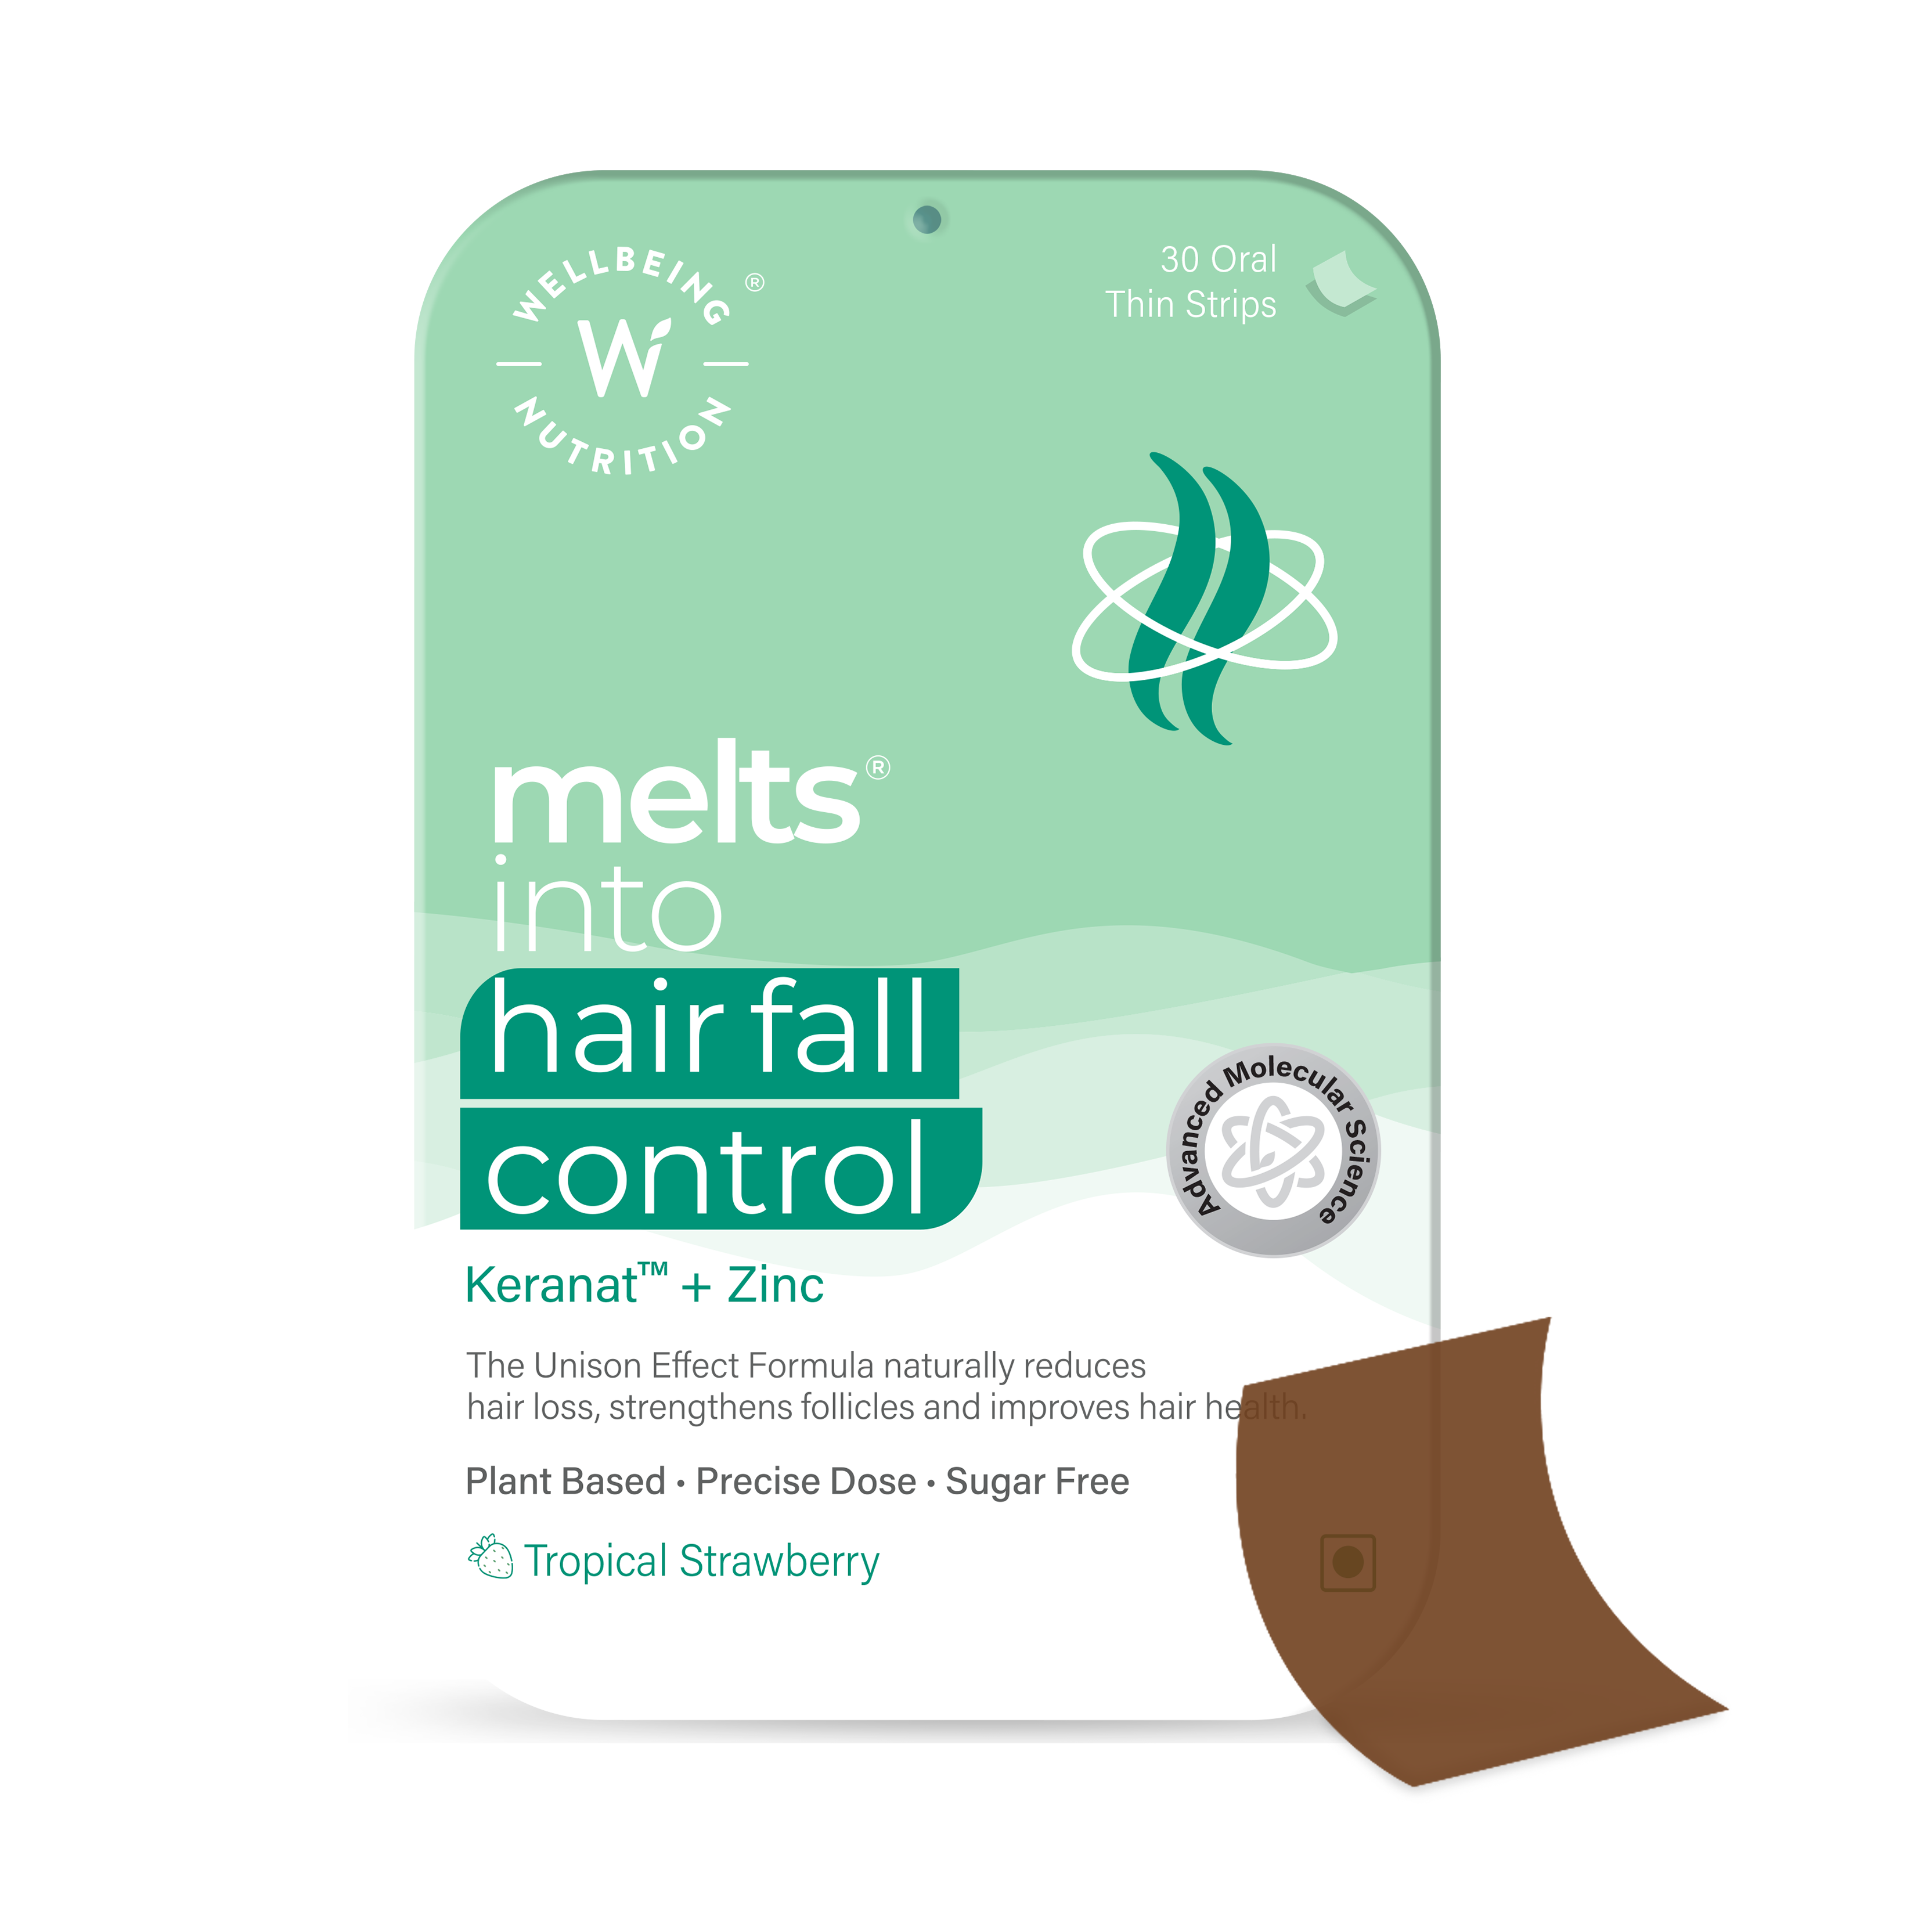 Hair Fall Control